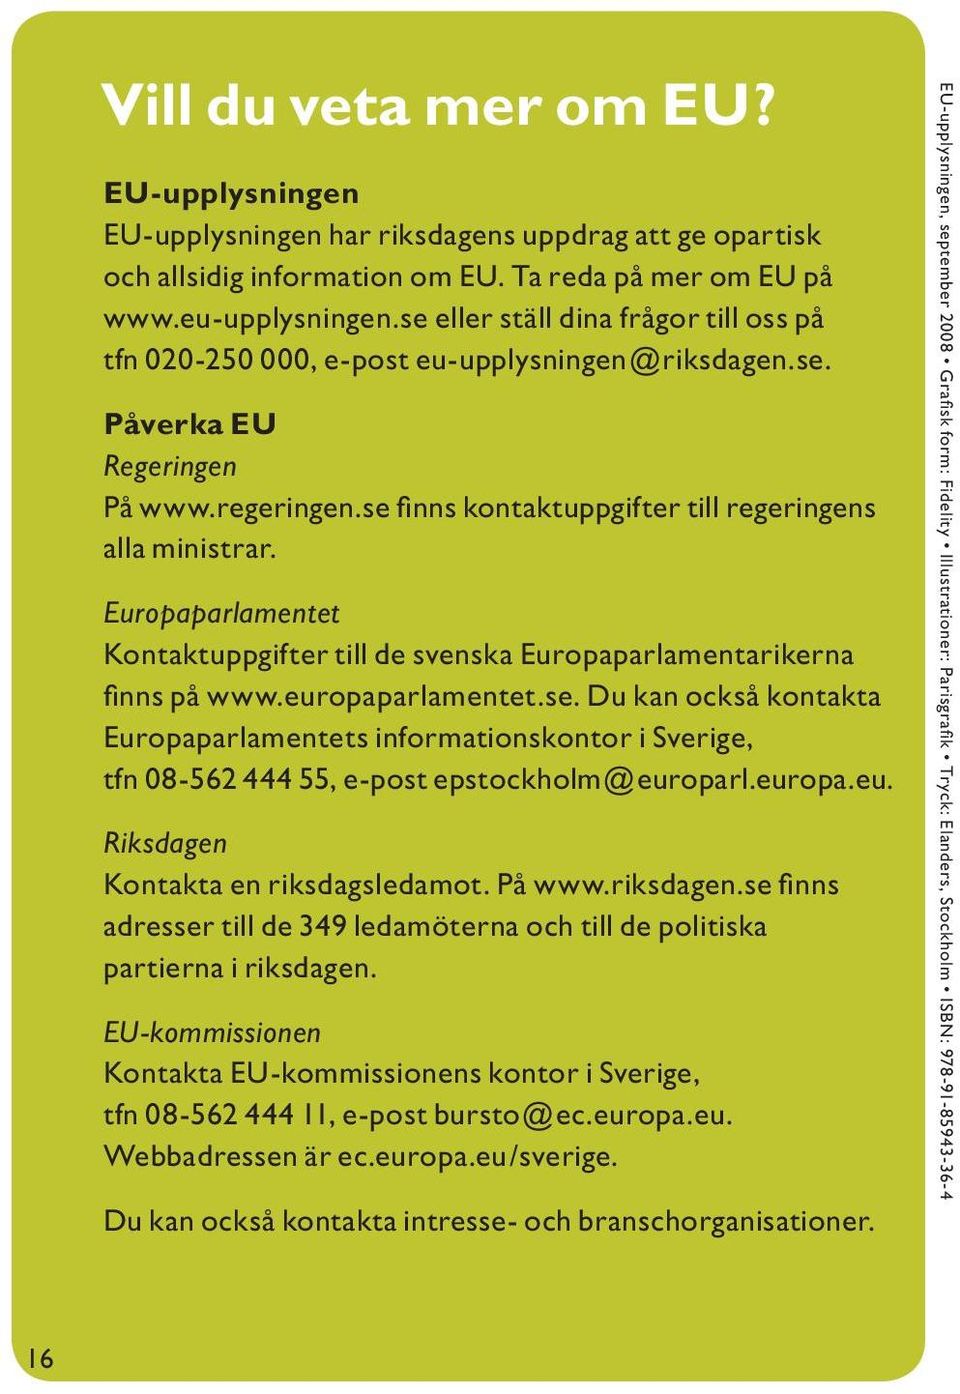 Europaparlamentet Kontaktuppgifter till de svenska Europaparlamentarikerna finns på www.europaparlamentet.se.